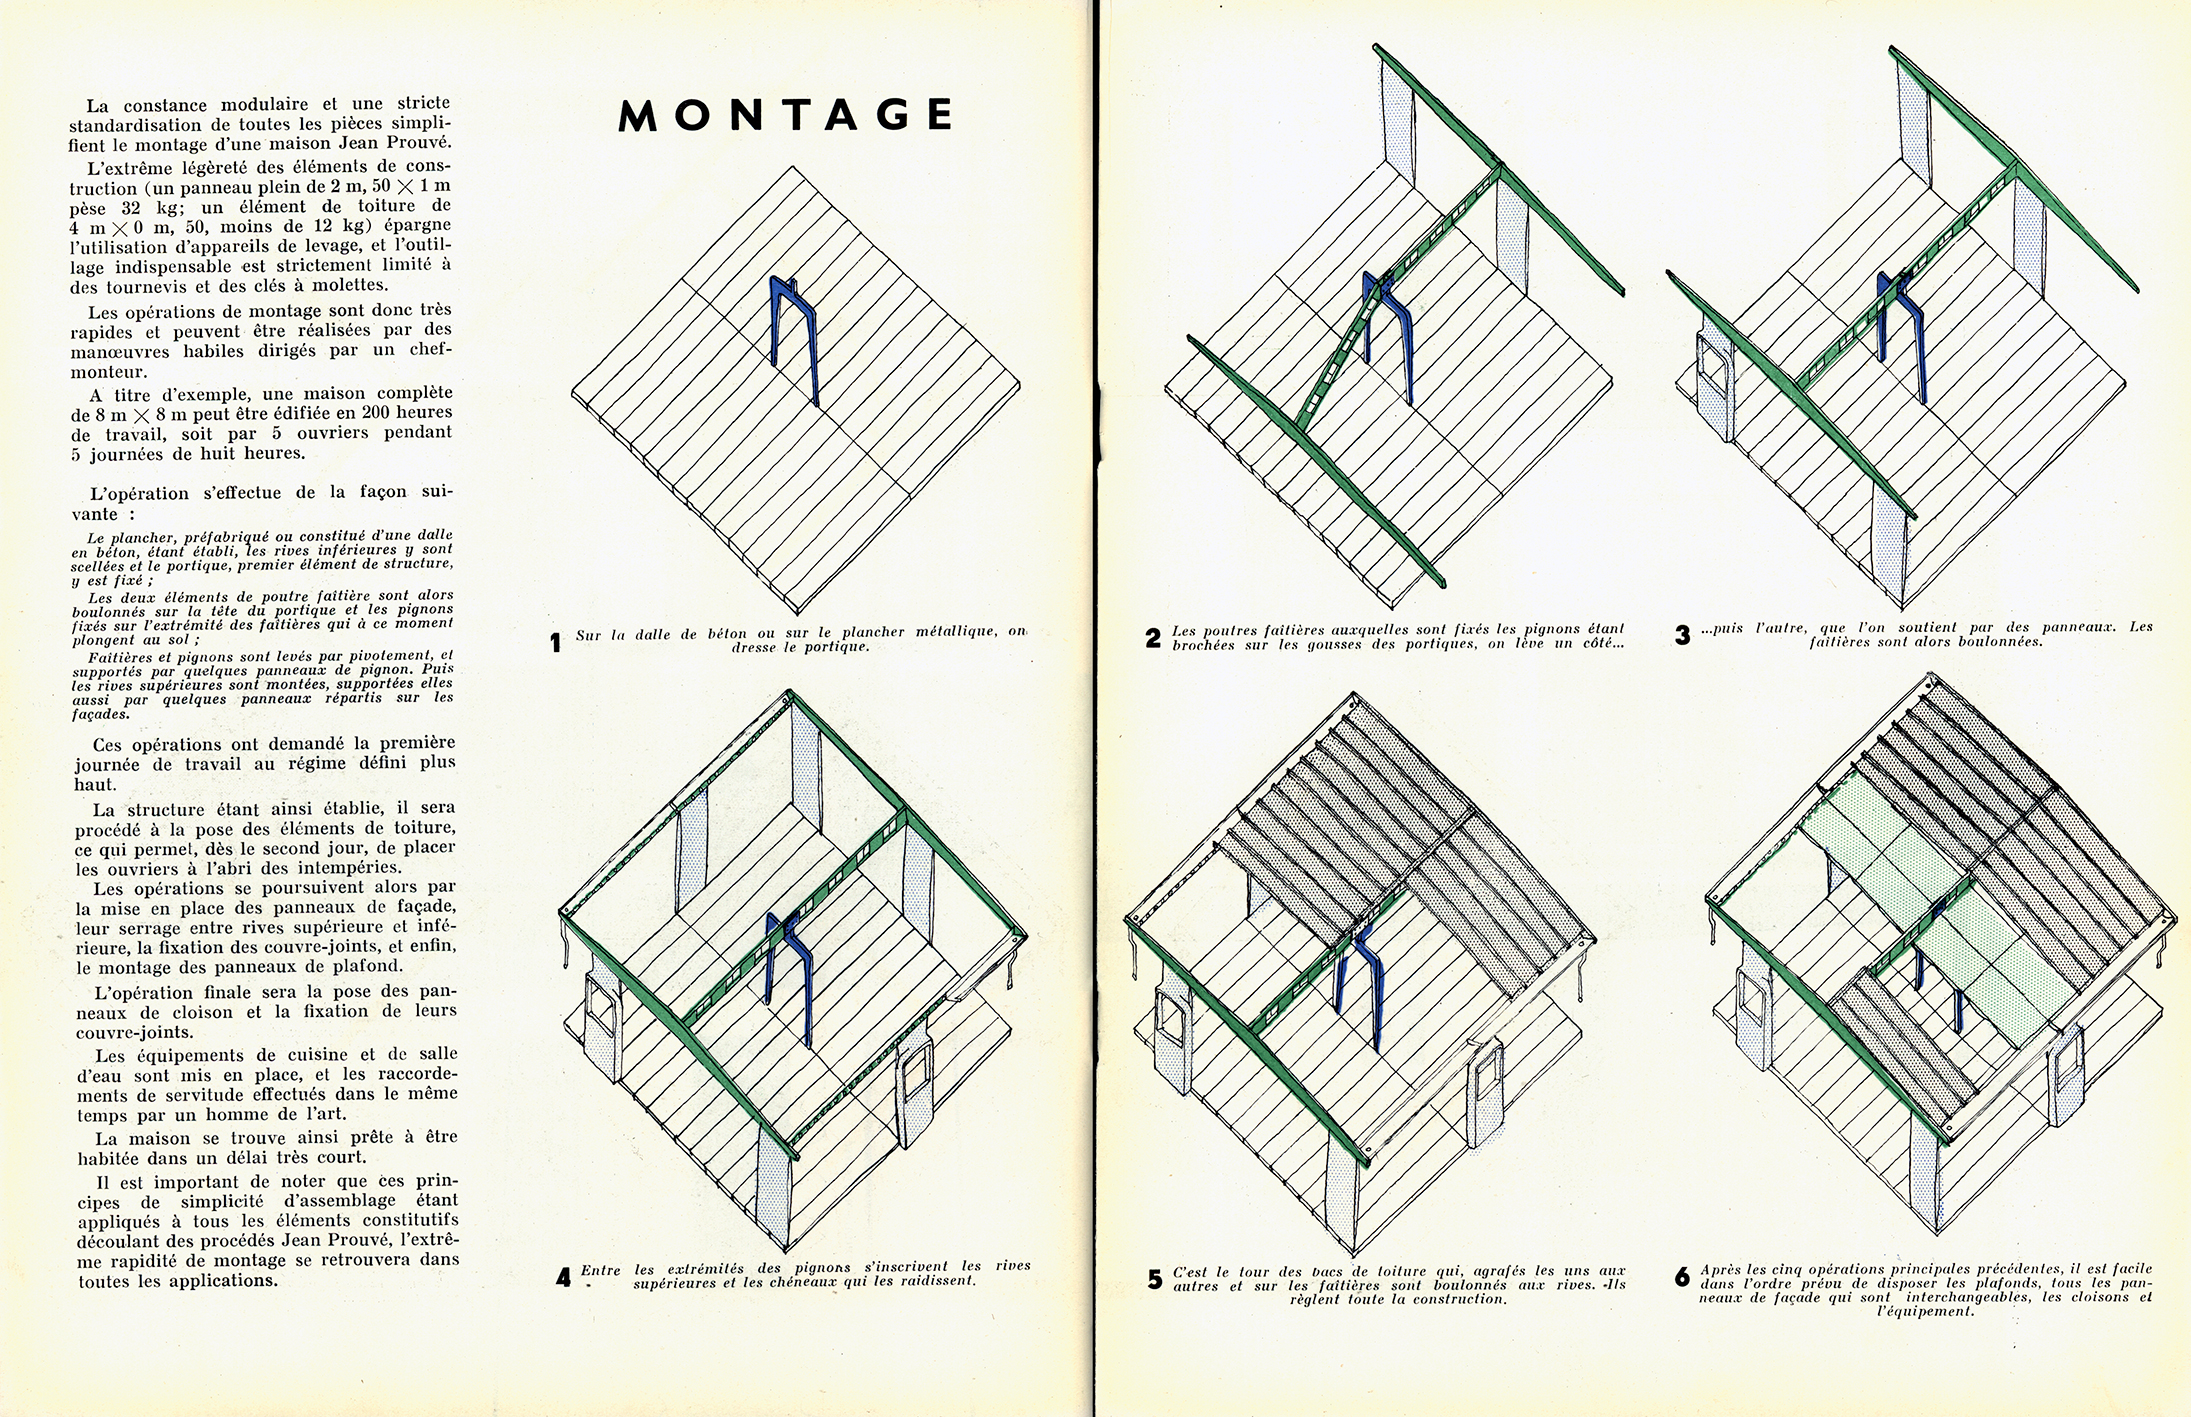 « Modes de constructions, types d’habitations créés par les Ateliers Jean Prouvé ». Brochure publicitaire pour les Ateliers Jean Prouvé Studal, Paris, c. 1950.